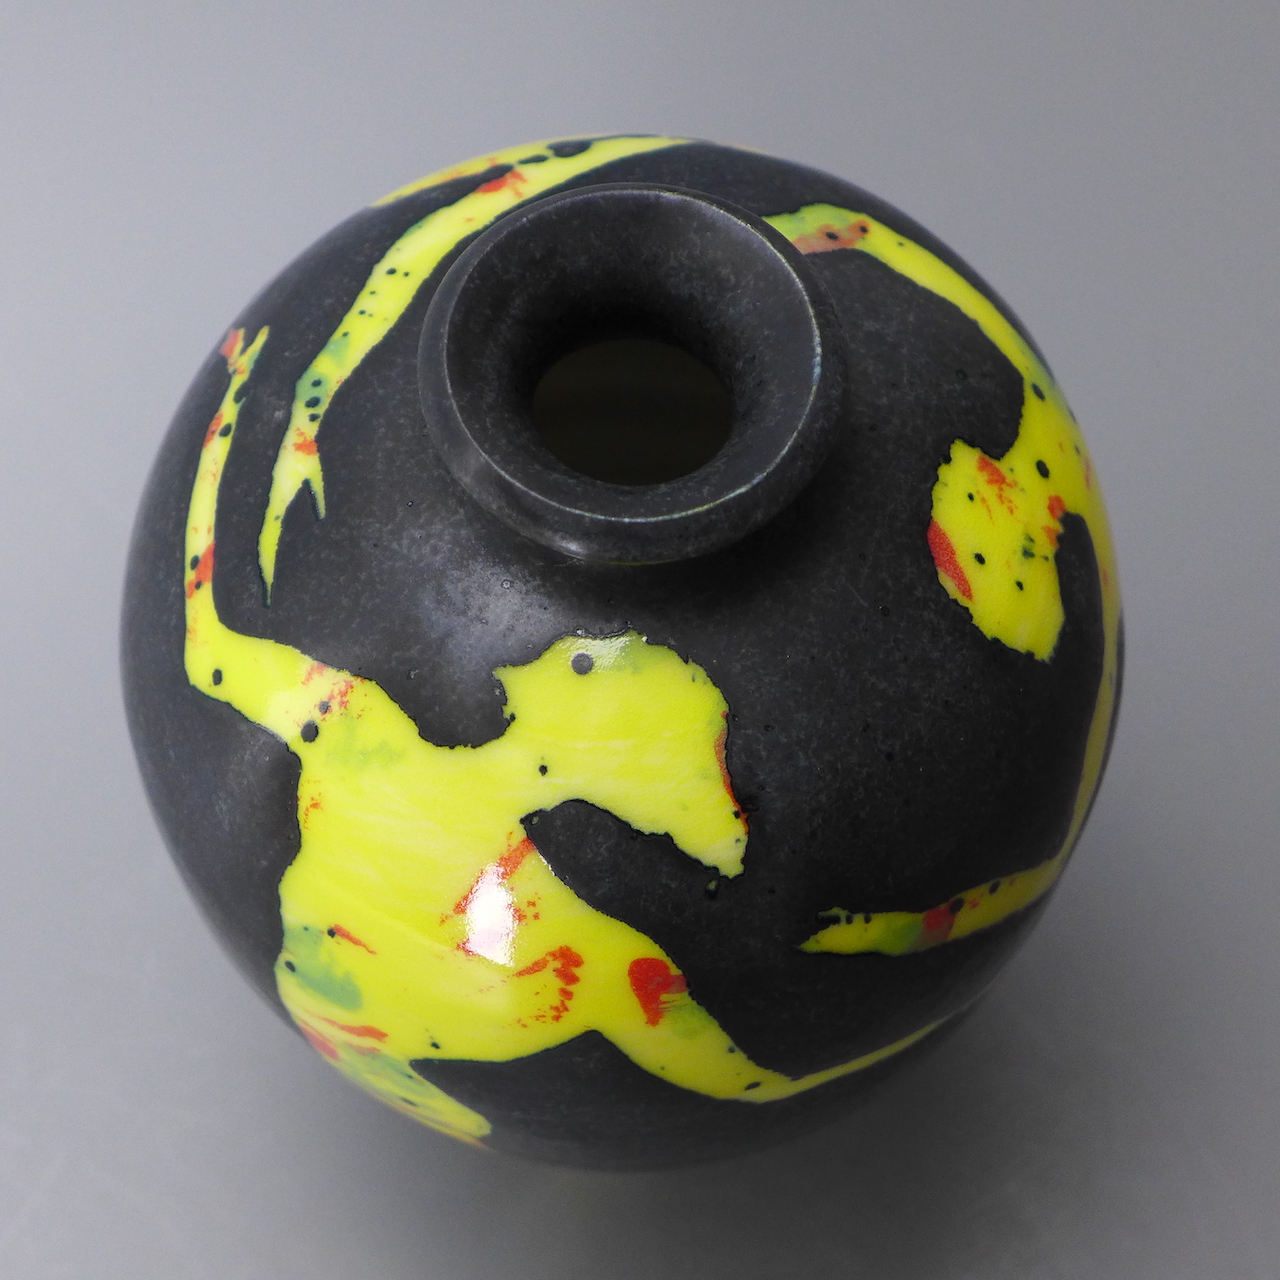 Figurative Vase in Yellow 03